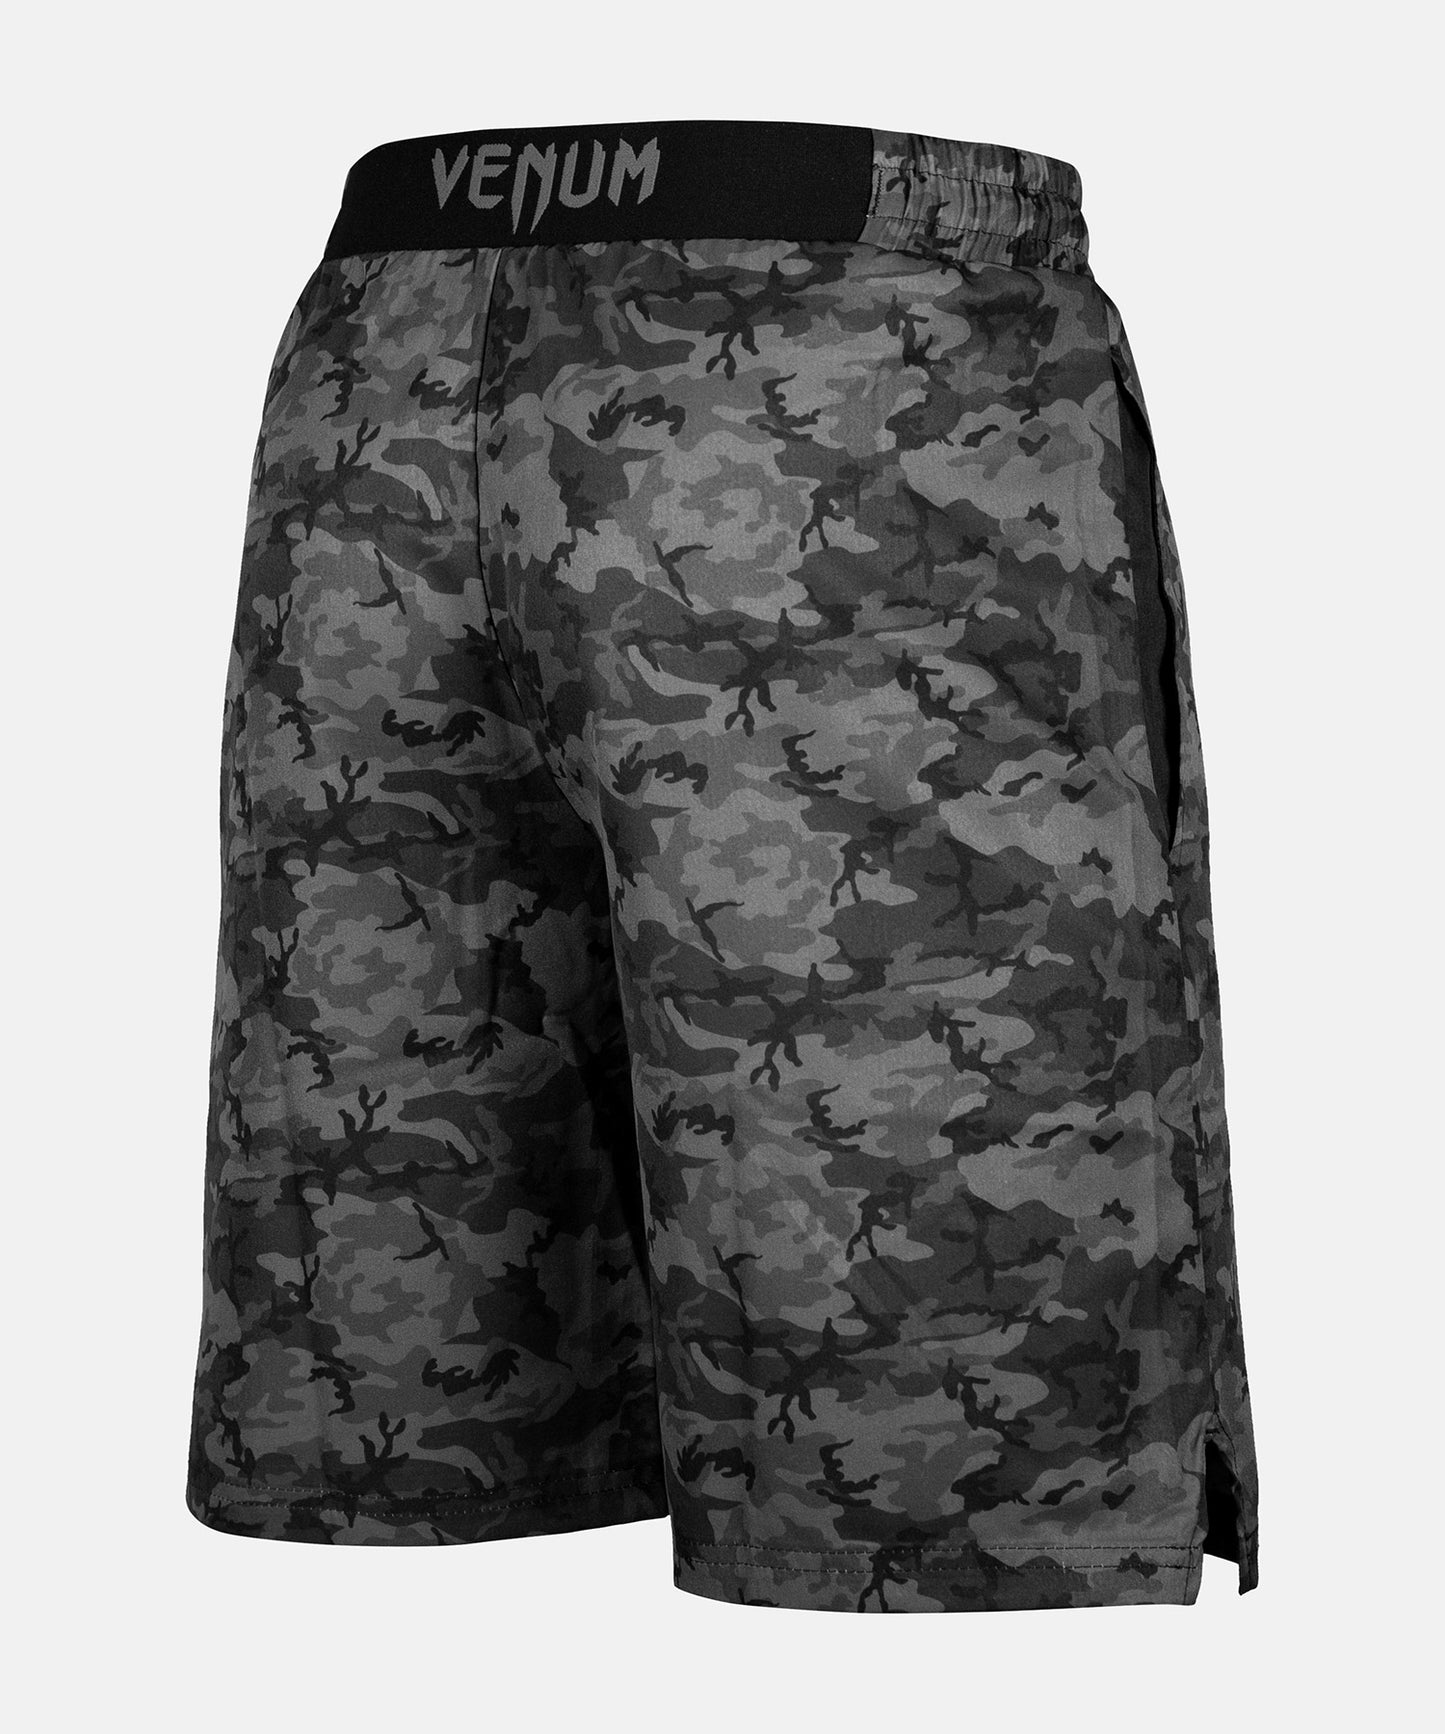 Pantalón corto de entrenamiento Venum Classic - Camo Urbano